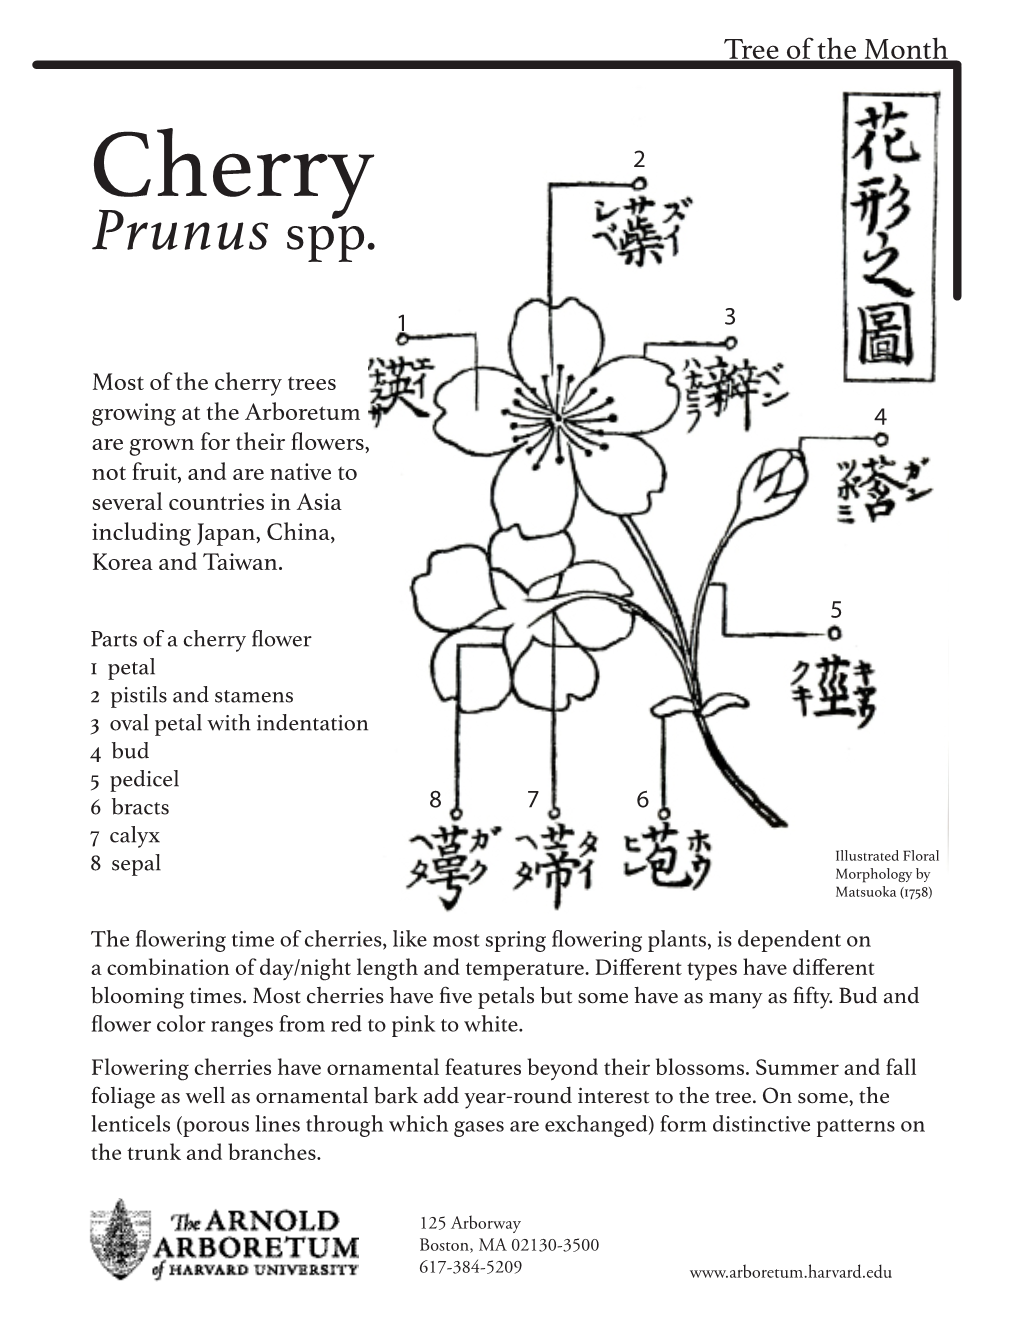 Cherry 2 Prunus Spp